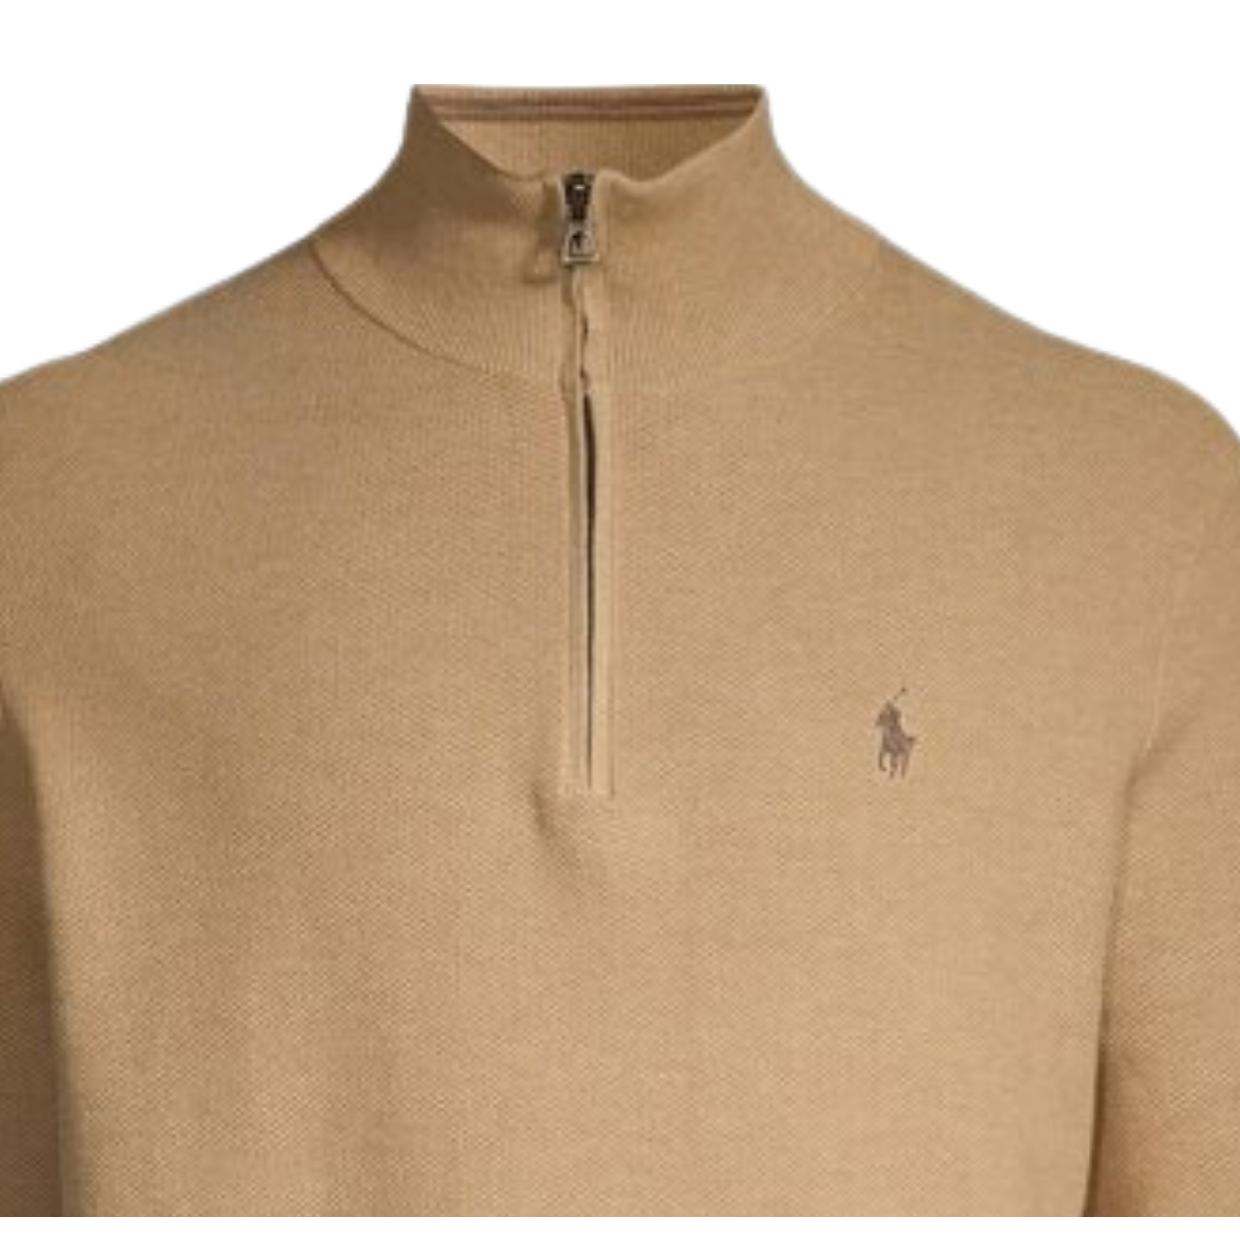 Polo Ralph Lauren Camel Brown Half Zip Sweater